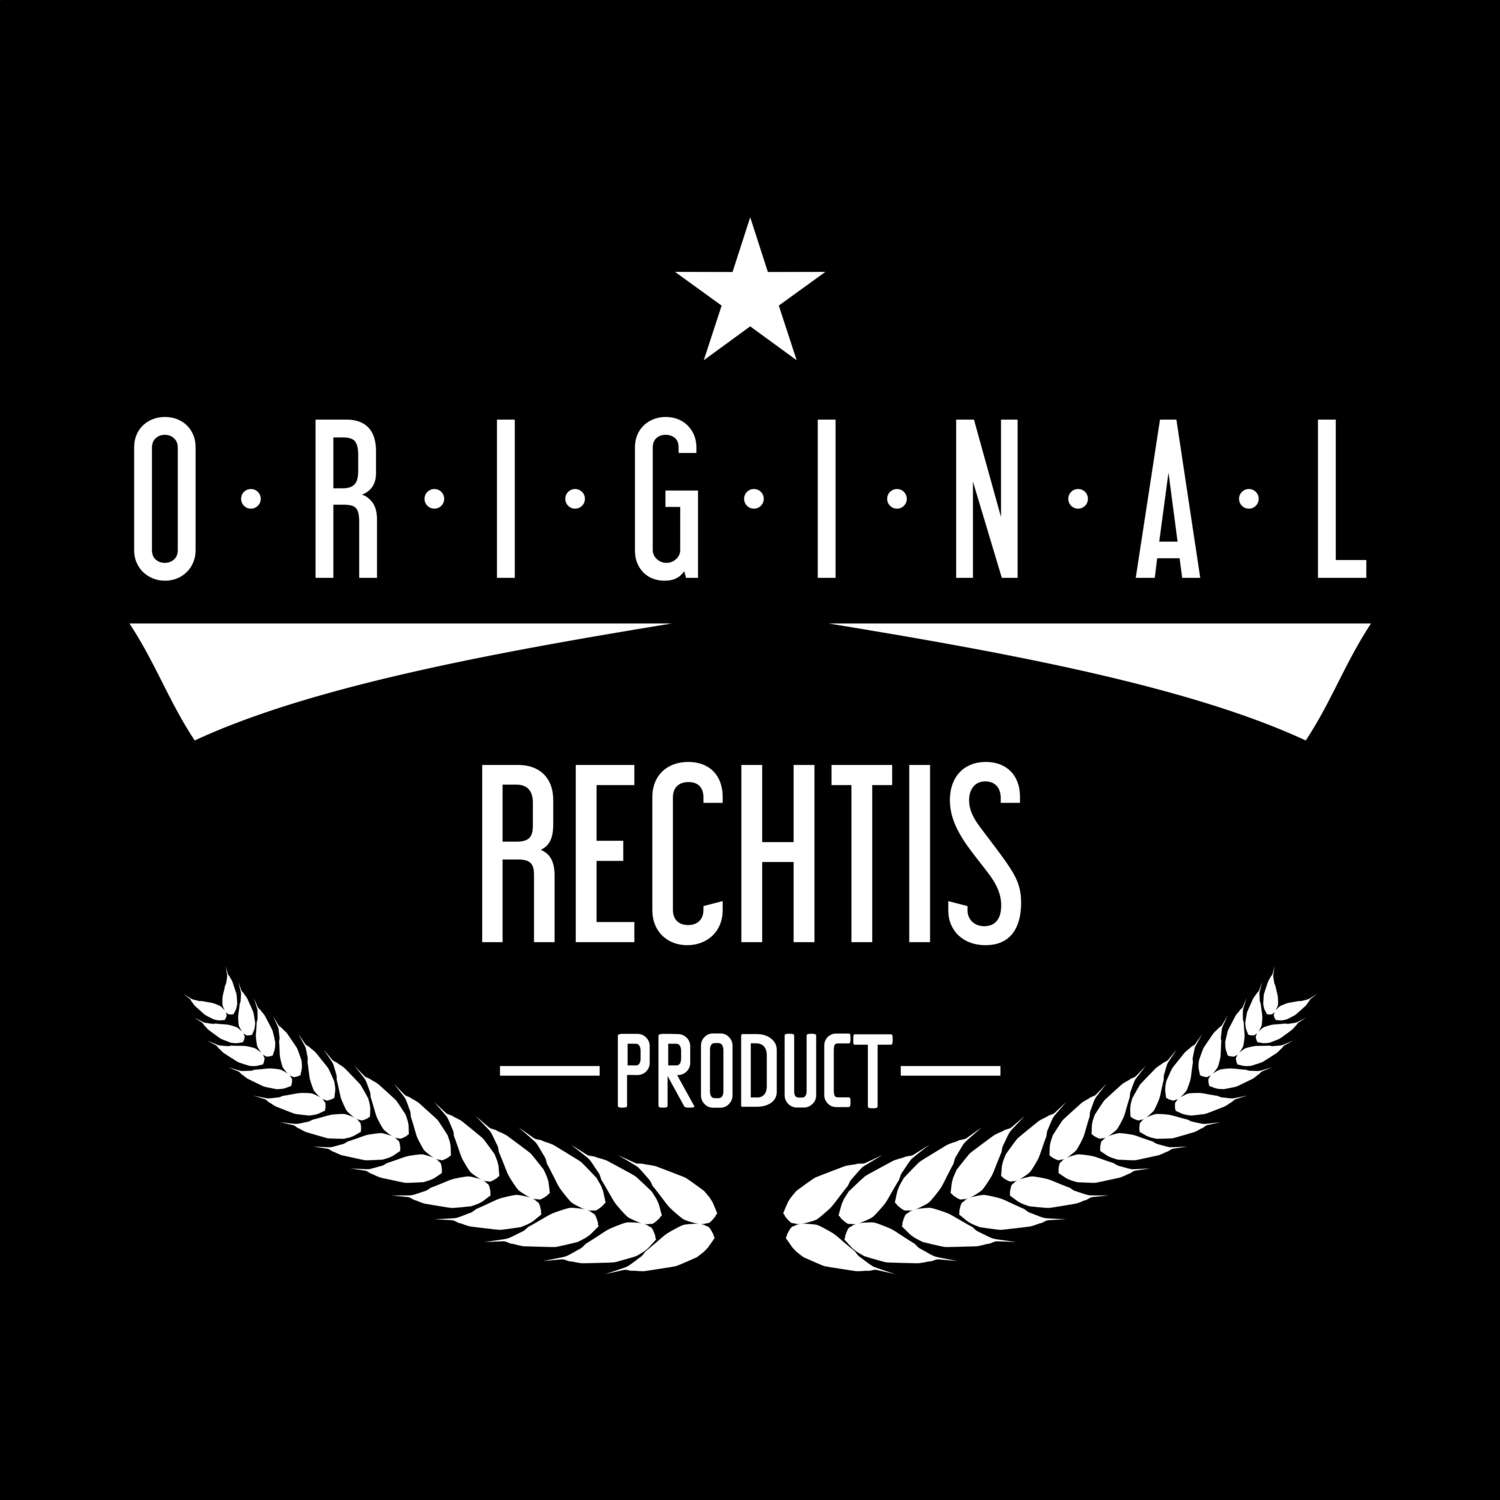 Rechtis T-Shirt »Original Product«